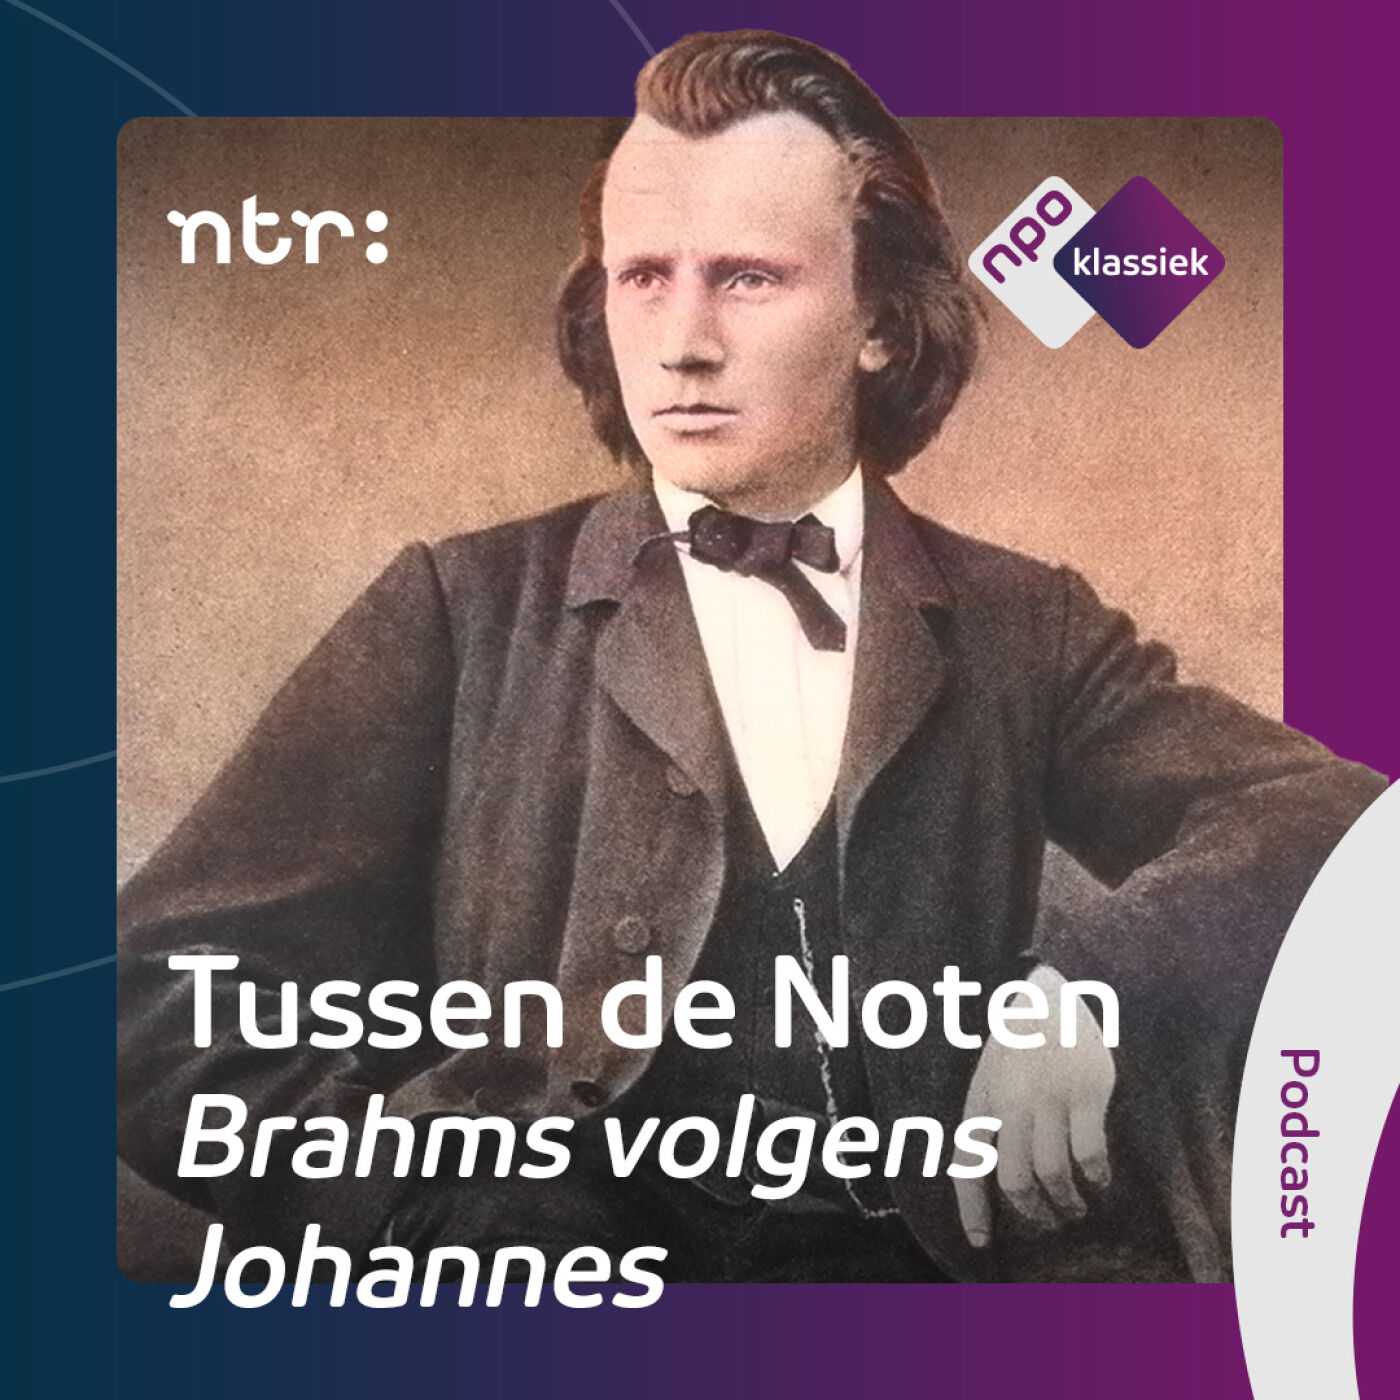 Tussen de Noten: Brahms volgens Johannes